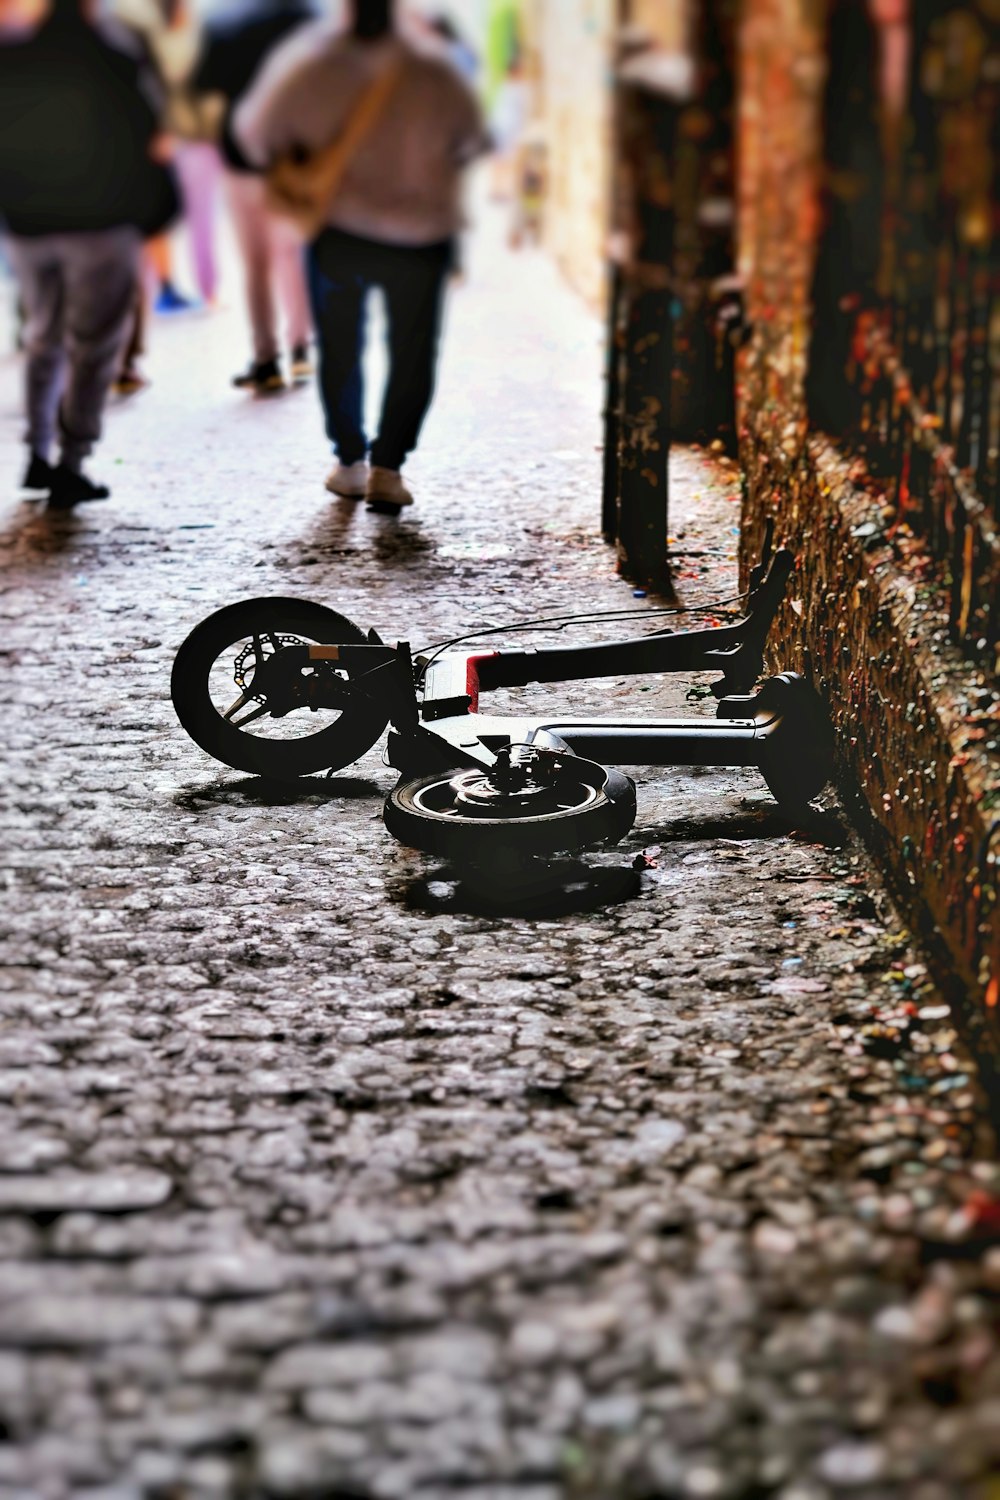 Una bicicleta rota tirada en el suelo en medio de una calle